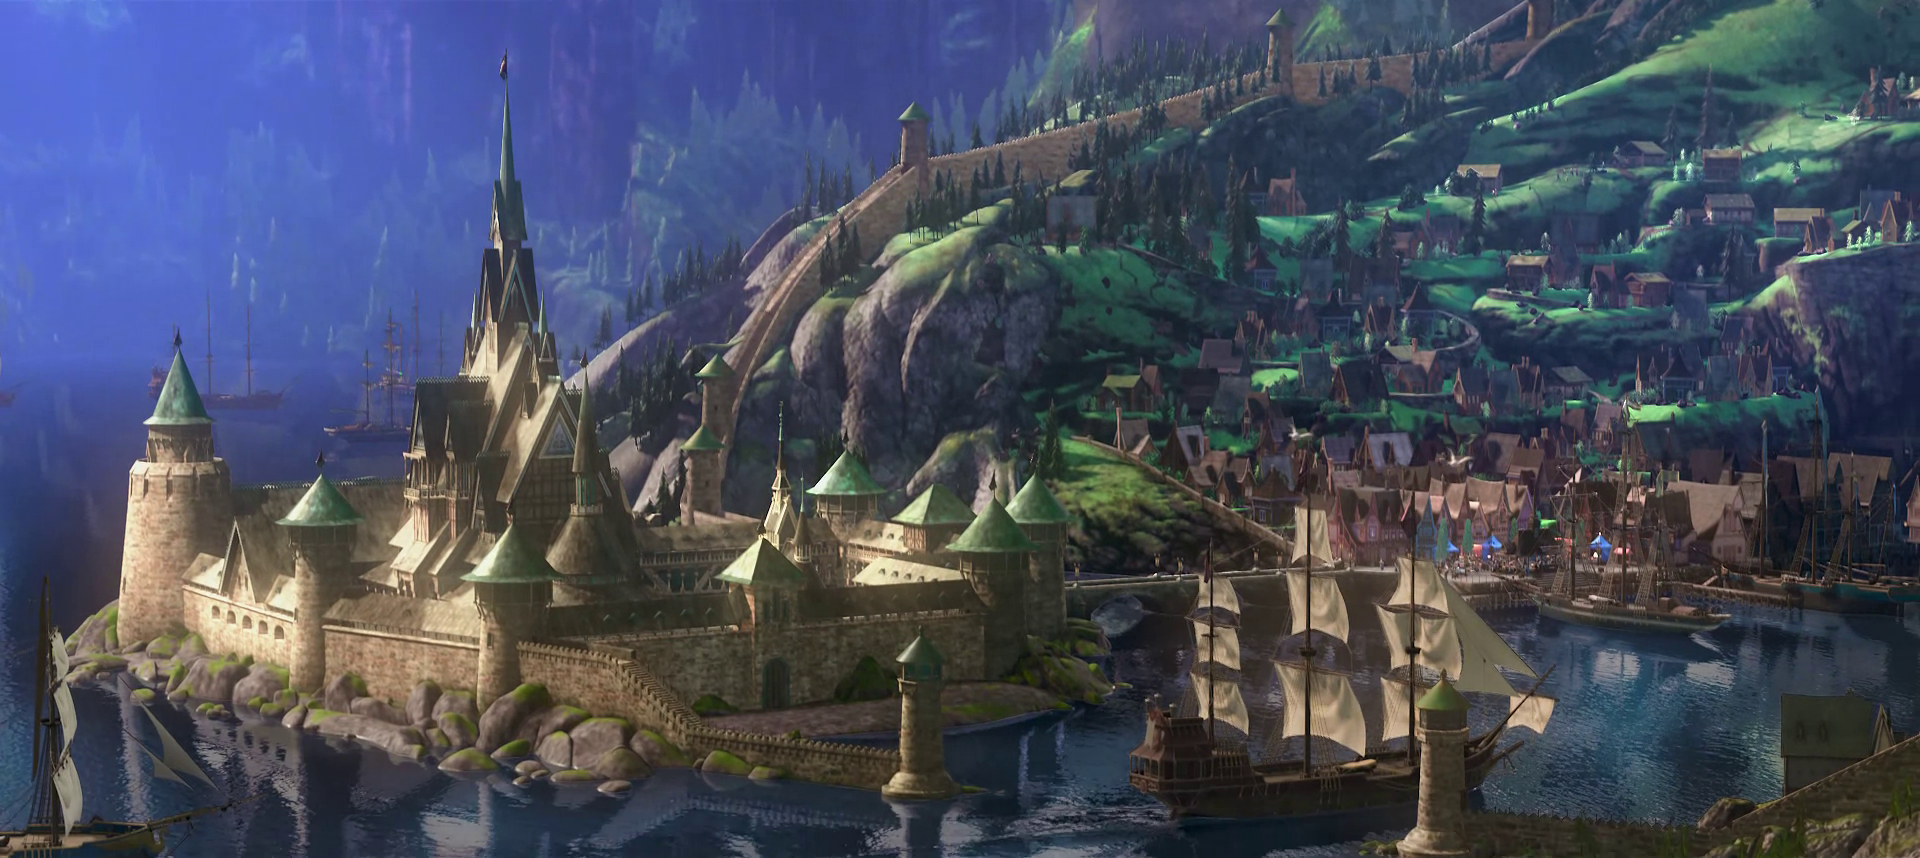 Arendelle Castle - Disney's Frozen